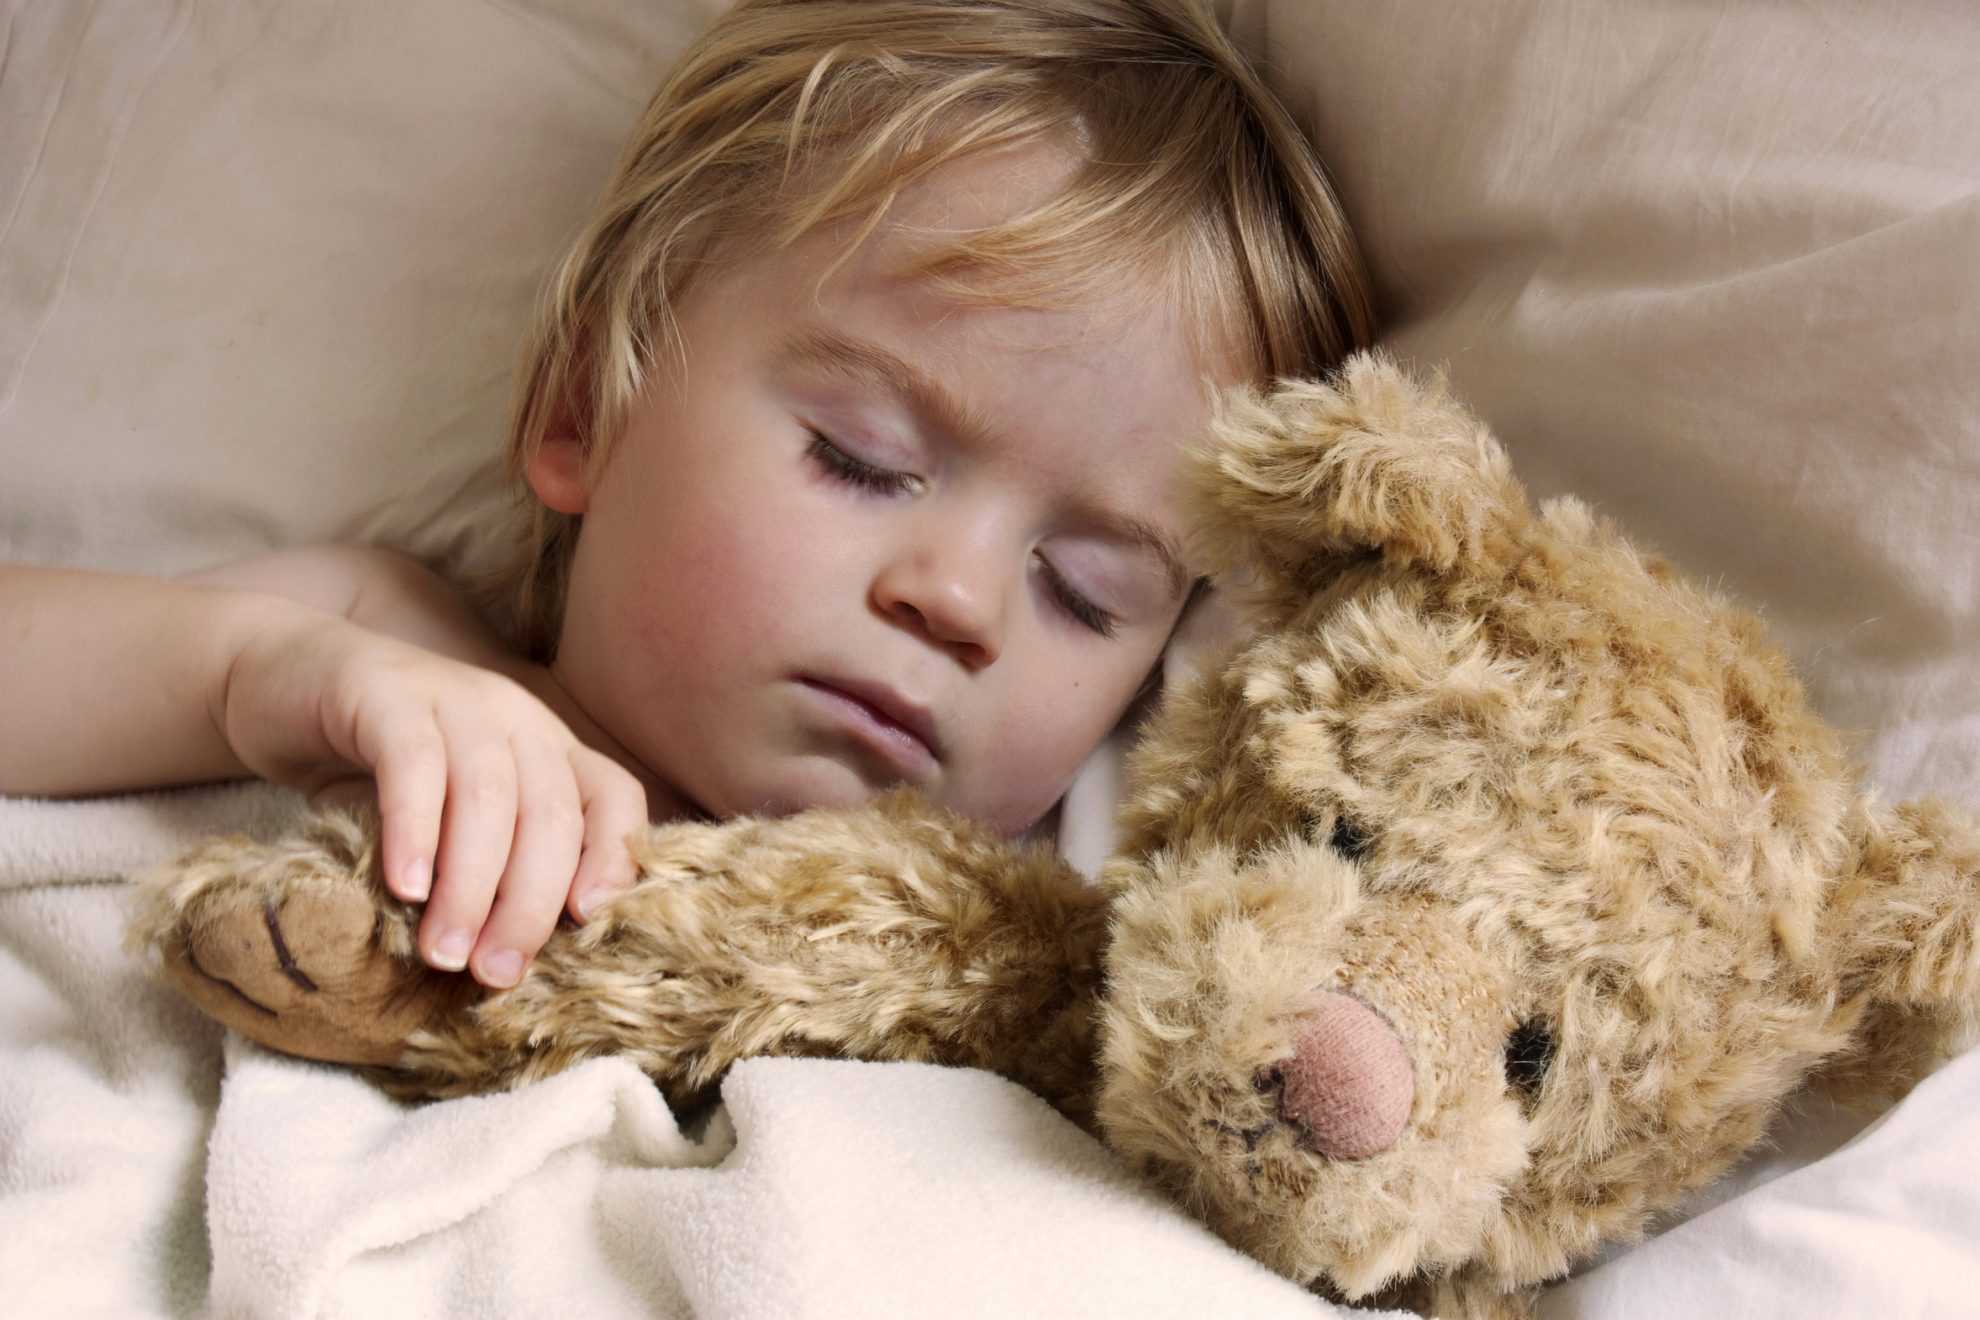 Ребенок плохо спит ночью и часто просыпается – какие причины и что делать 2020